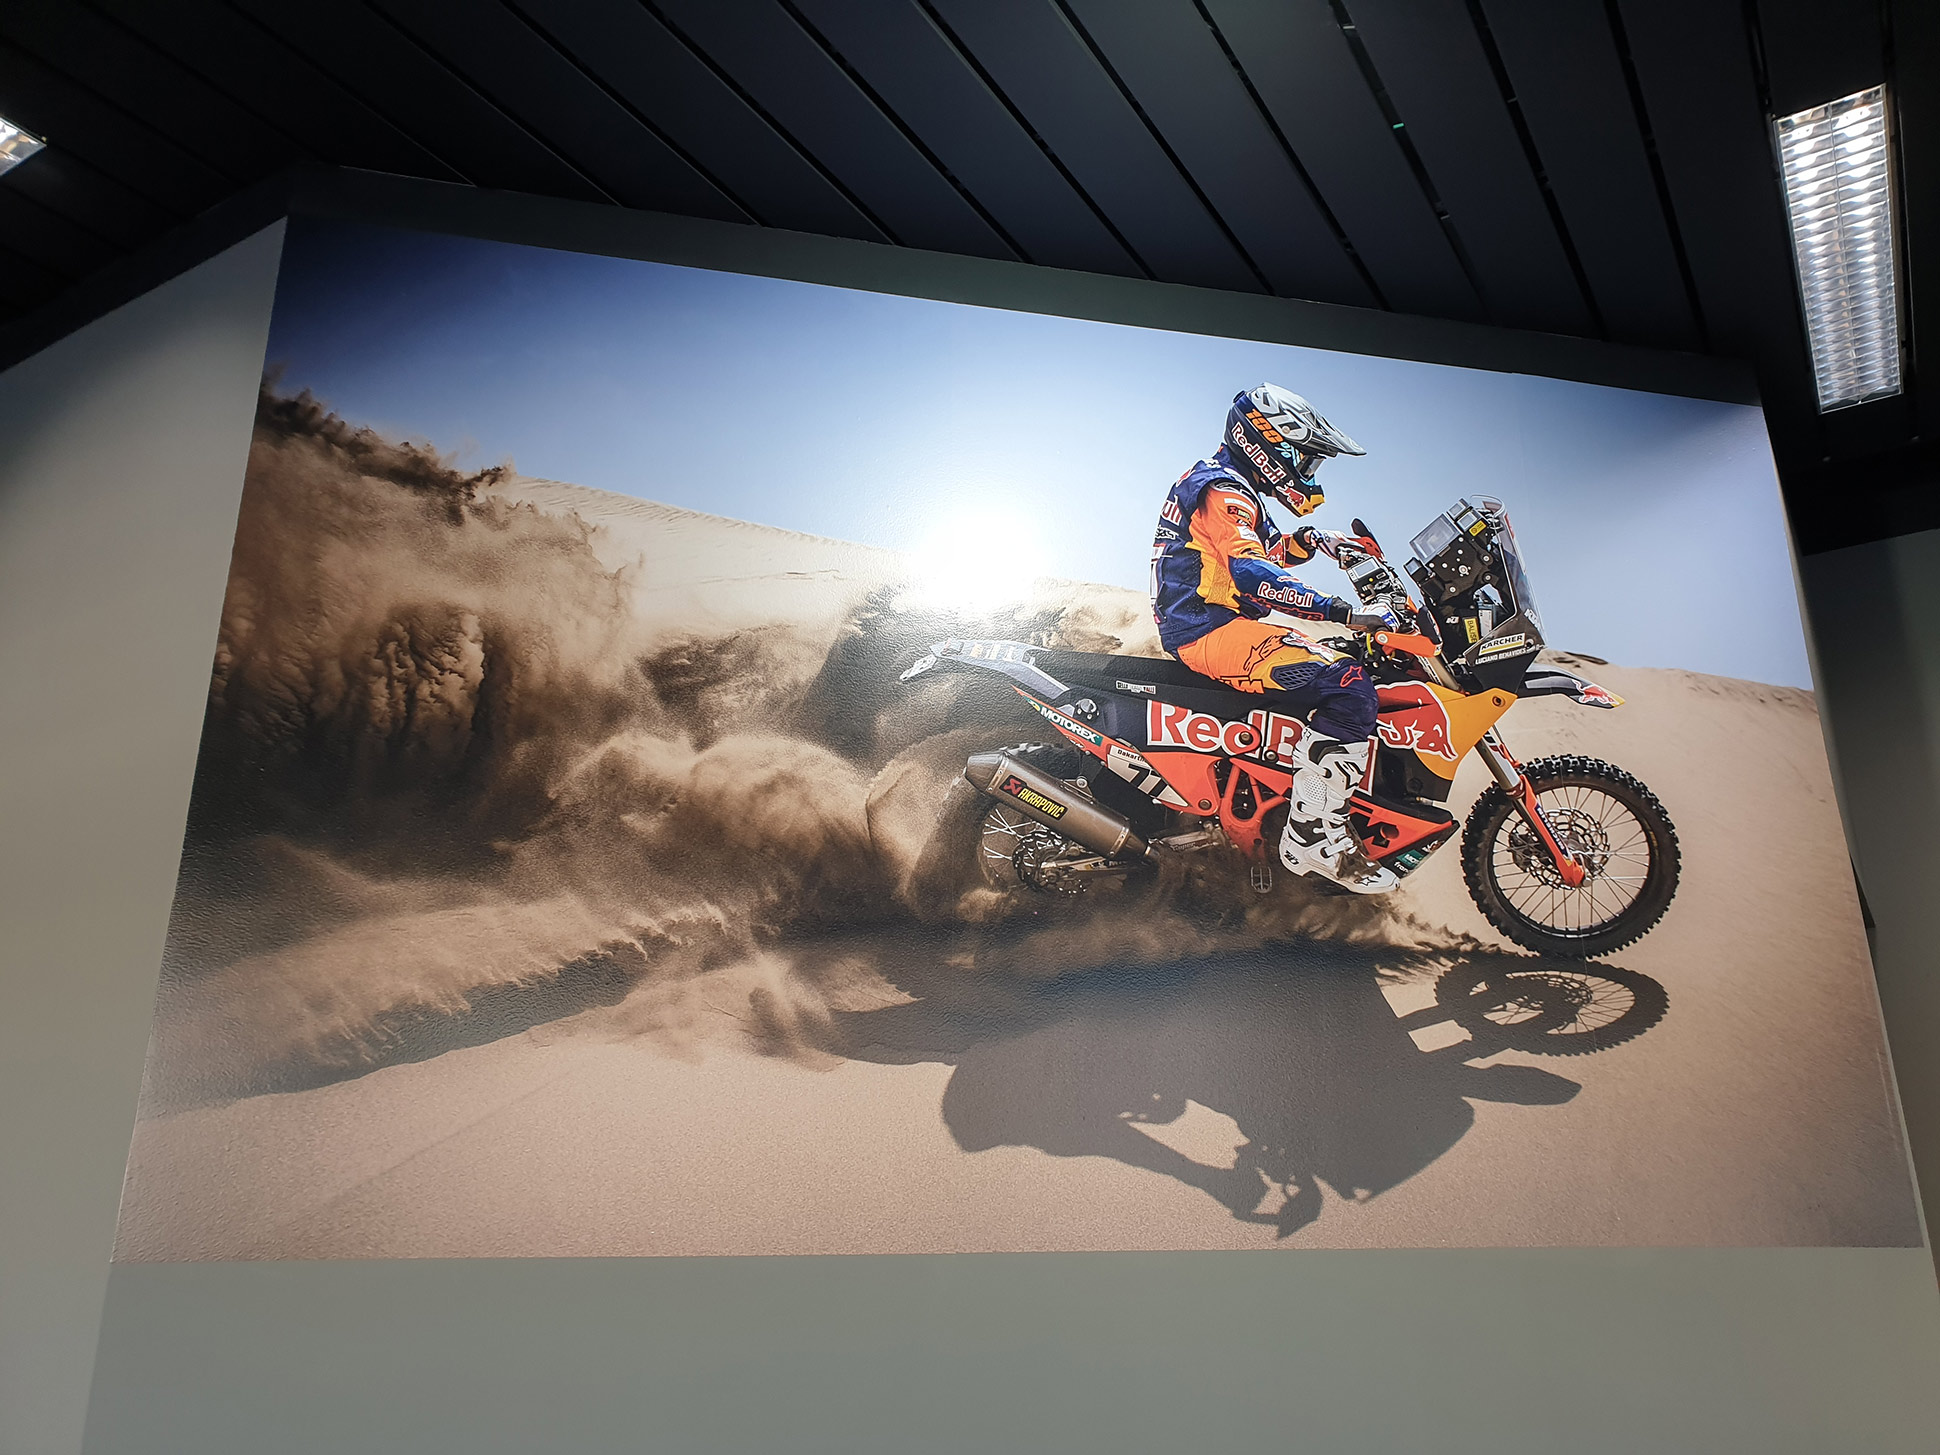 Veggdekor for Mrexx Motor med motorsykkel som kjører på sanddyner